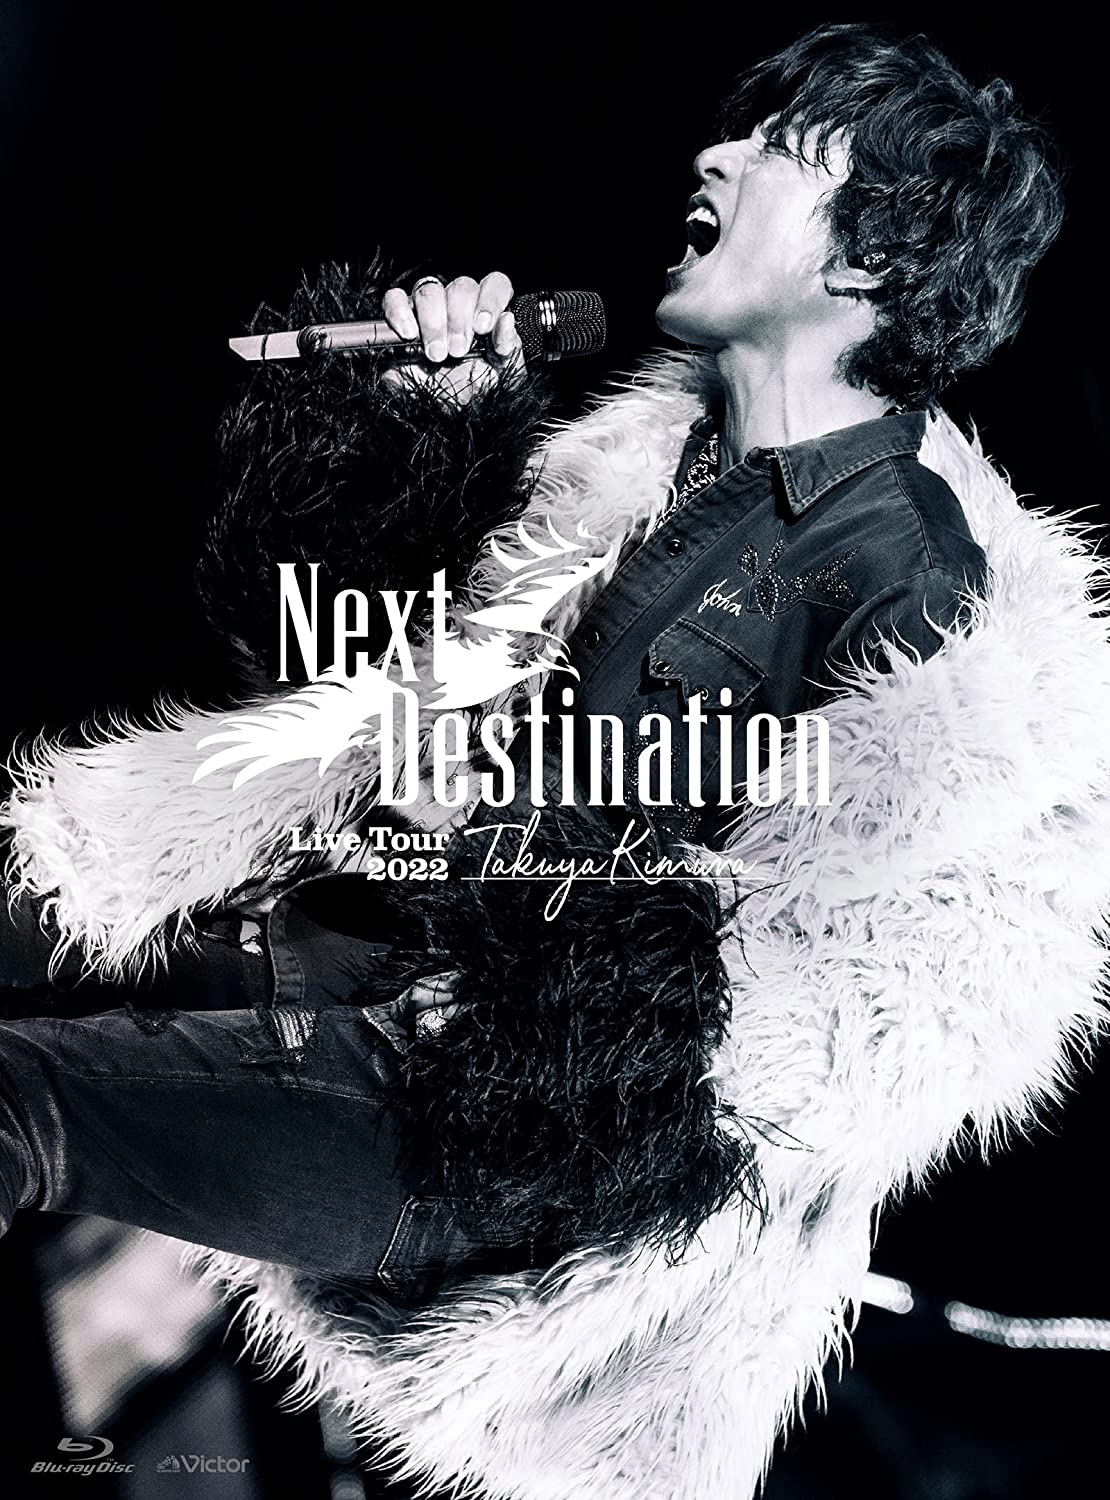 木村拓哉  [Blu-ray初回限定盤]Takuya Kimura Live Tour 2022 Next Destination Blu-ray 1080p AVC LPCM 2 0 - CHDBits[43.23GB]-2.jpg